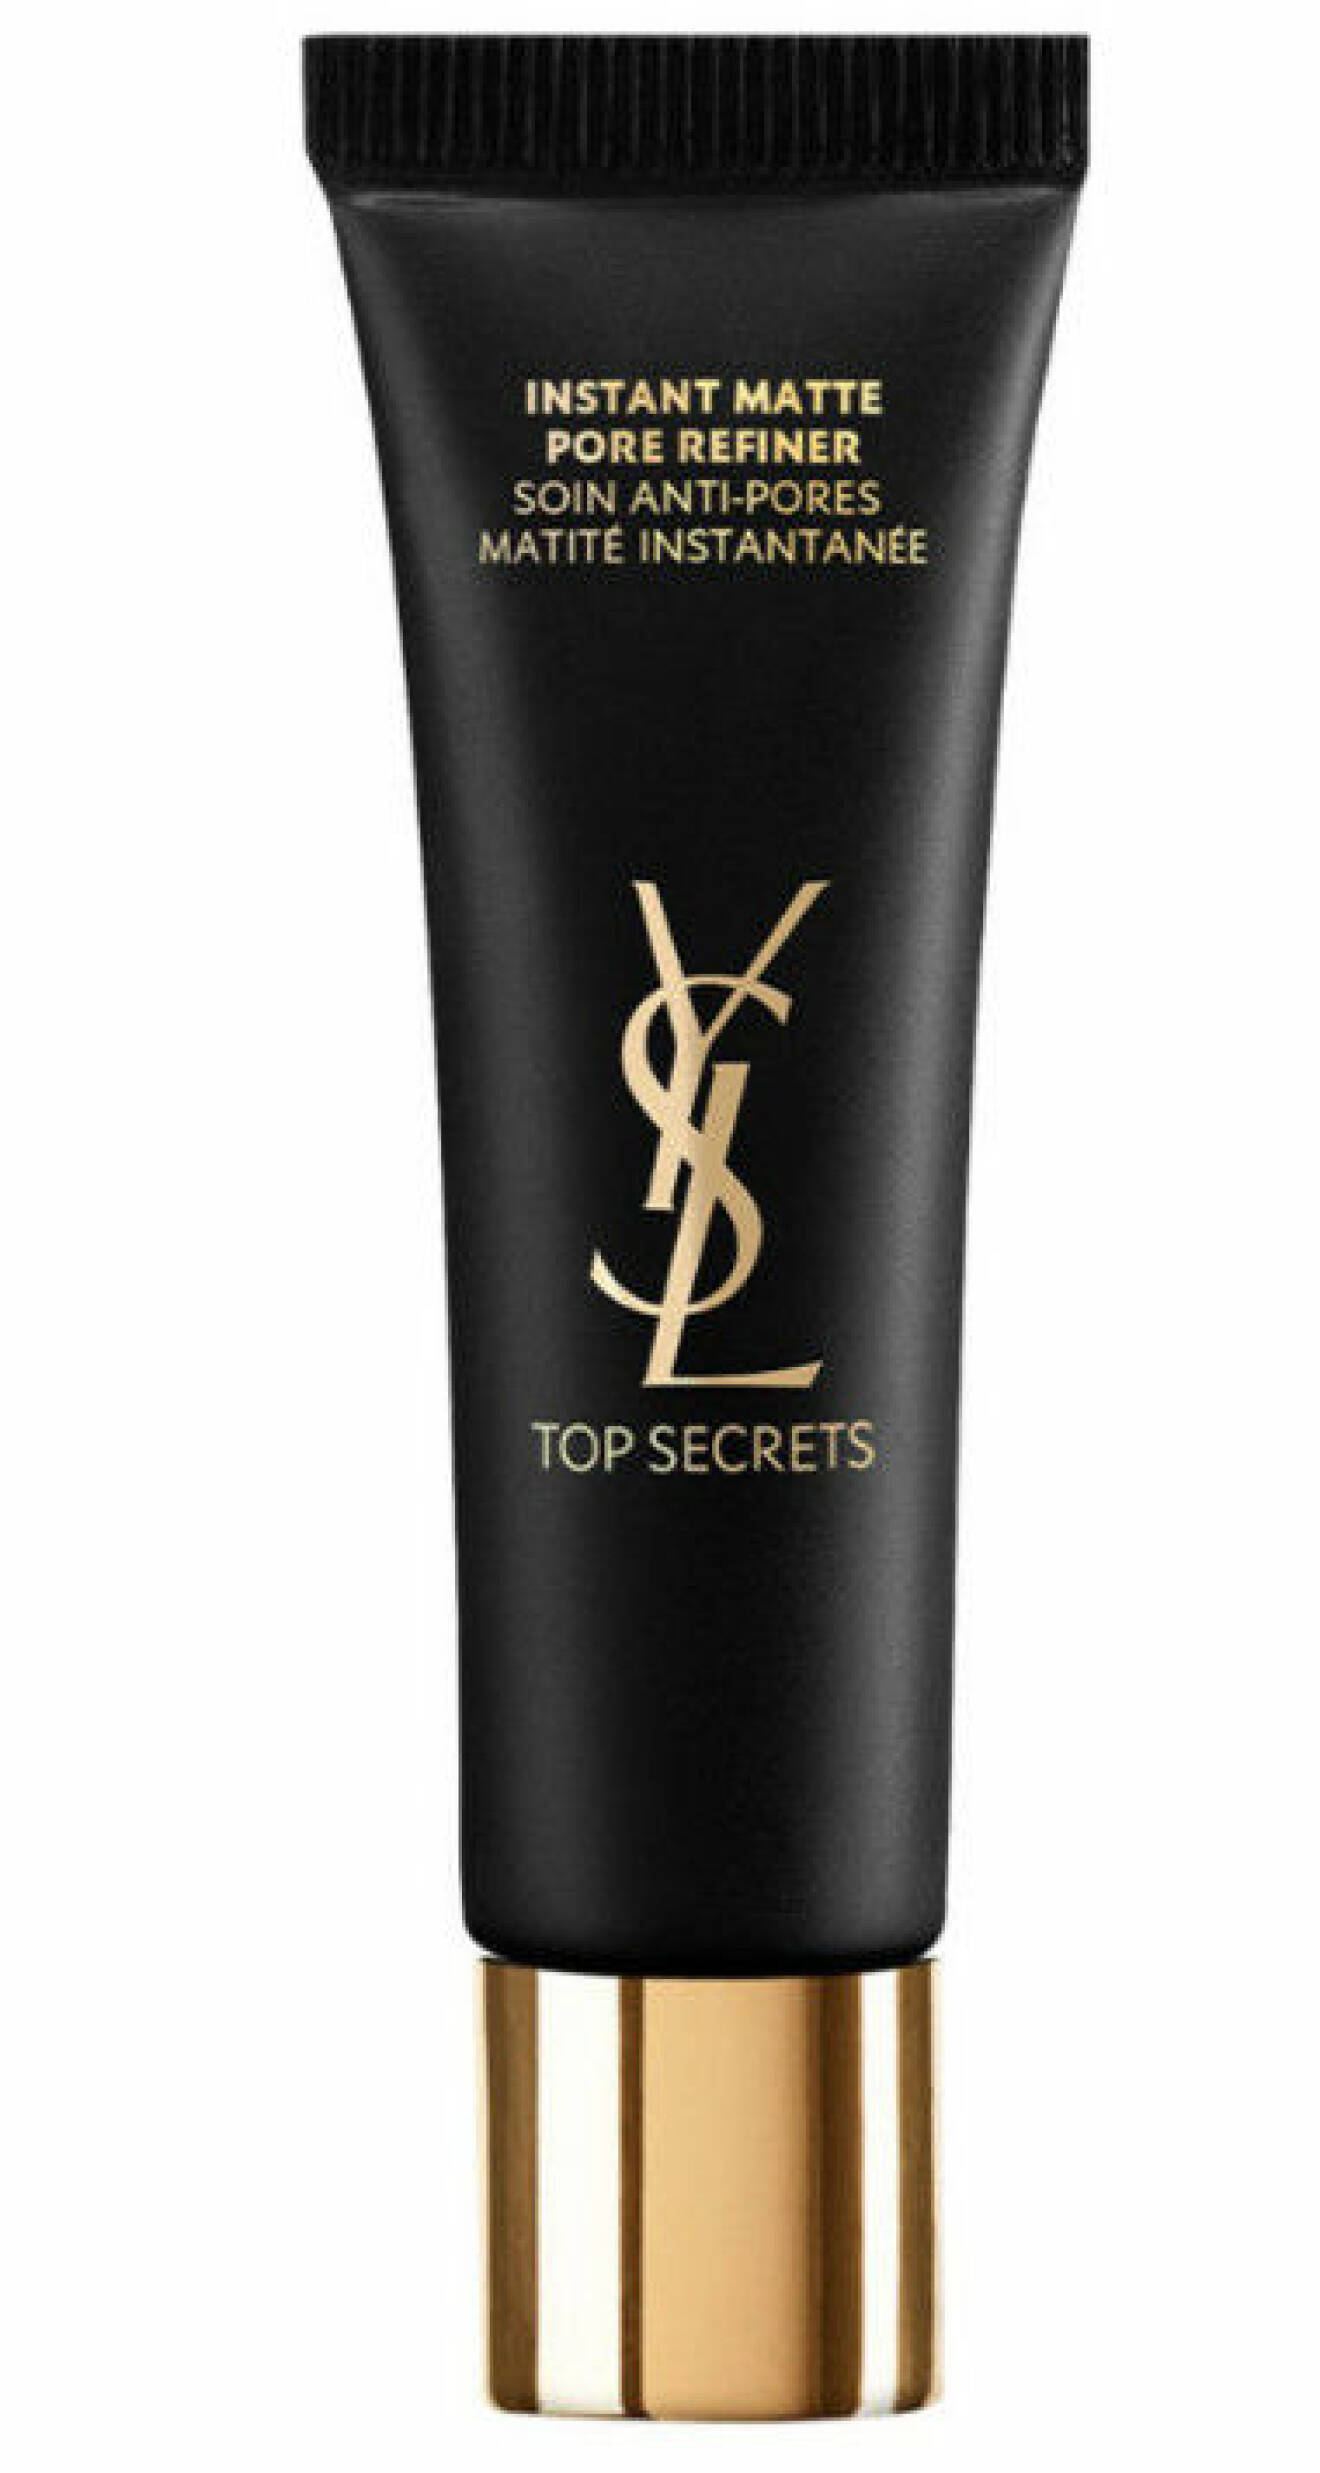 YSL Top Secret Instant Matte Pore Refiner kan användas som en dagcrème under och över makeup